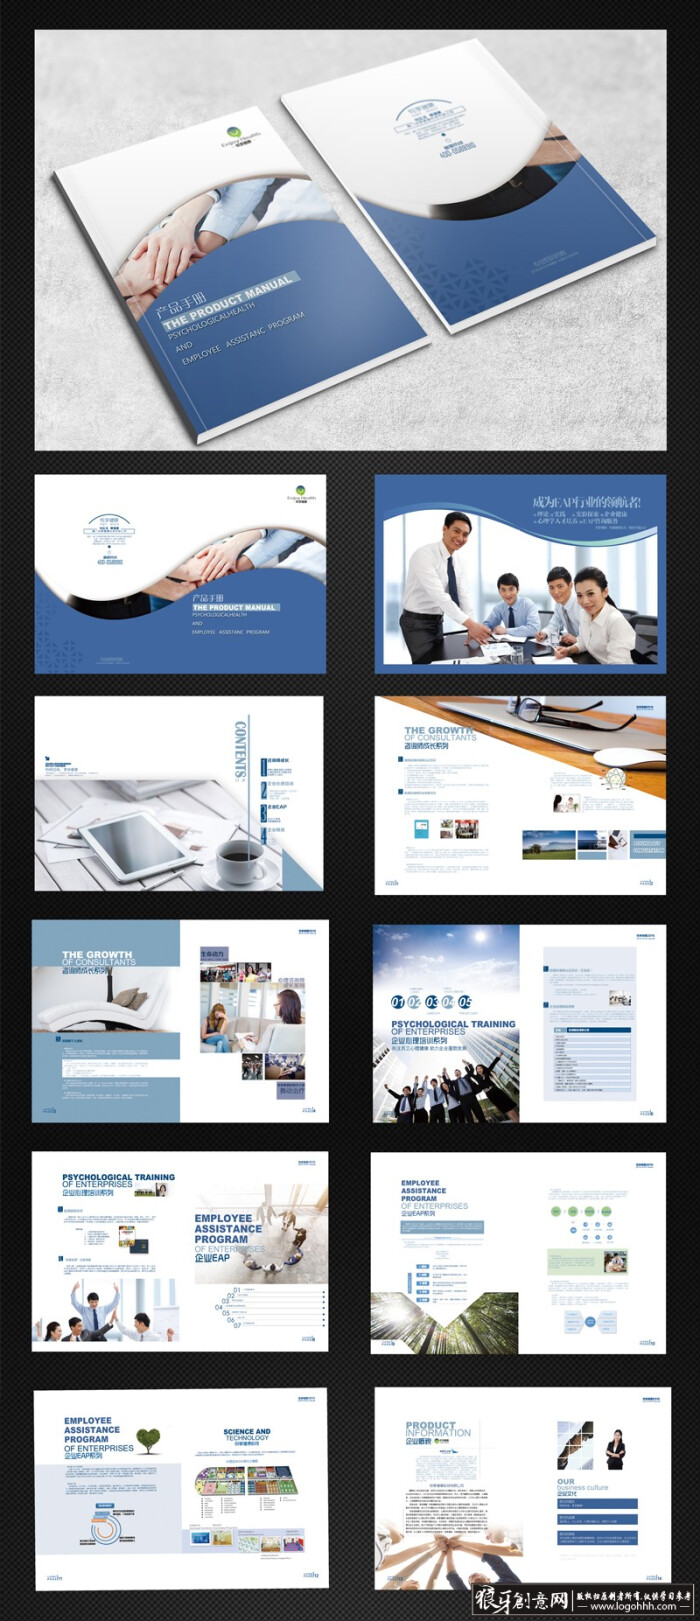 广告公司画册psd 企业手册公司形象画册 企业宣传册产品画册封面图